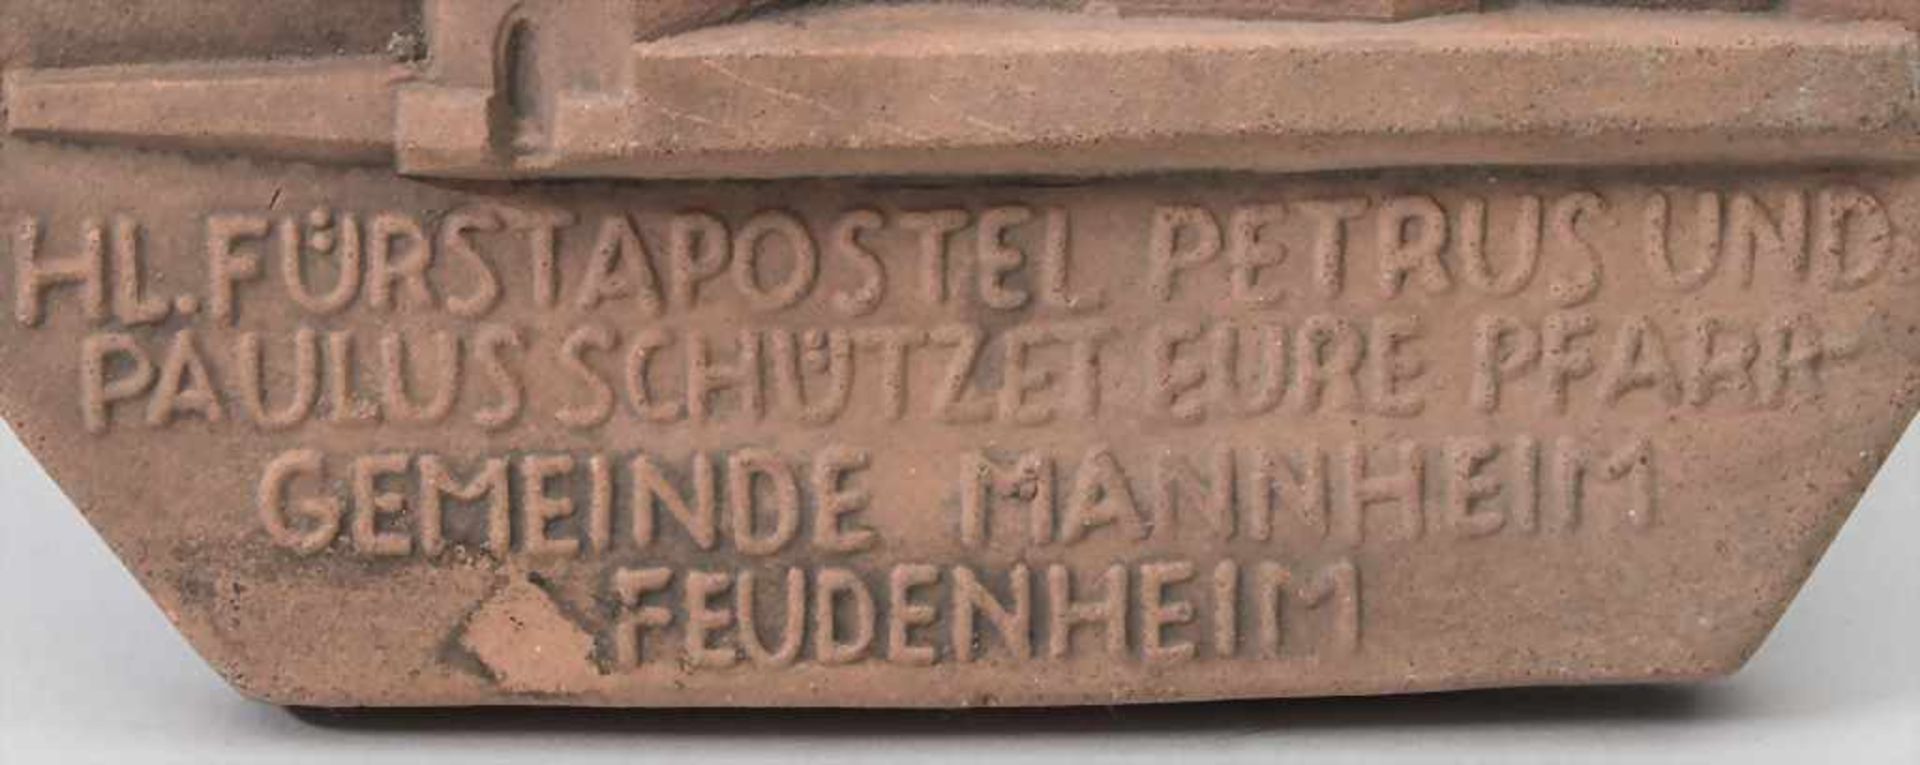 Wandrelief / A wall relief, St. Peter und Paul Kirche Mannheim Feudenheim, um 1930 - Bild 2 aus 4